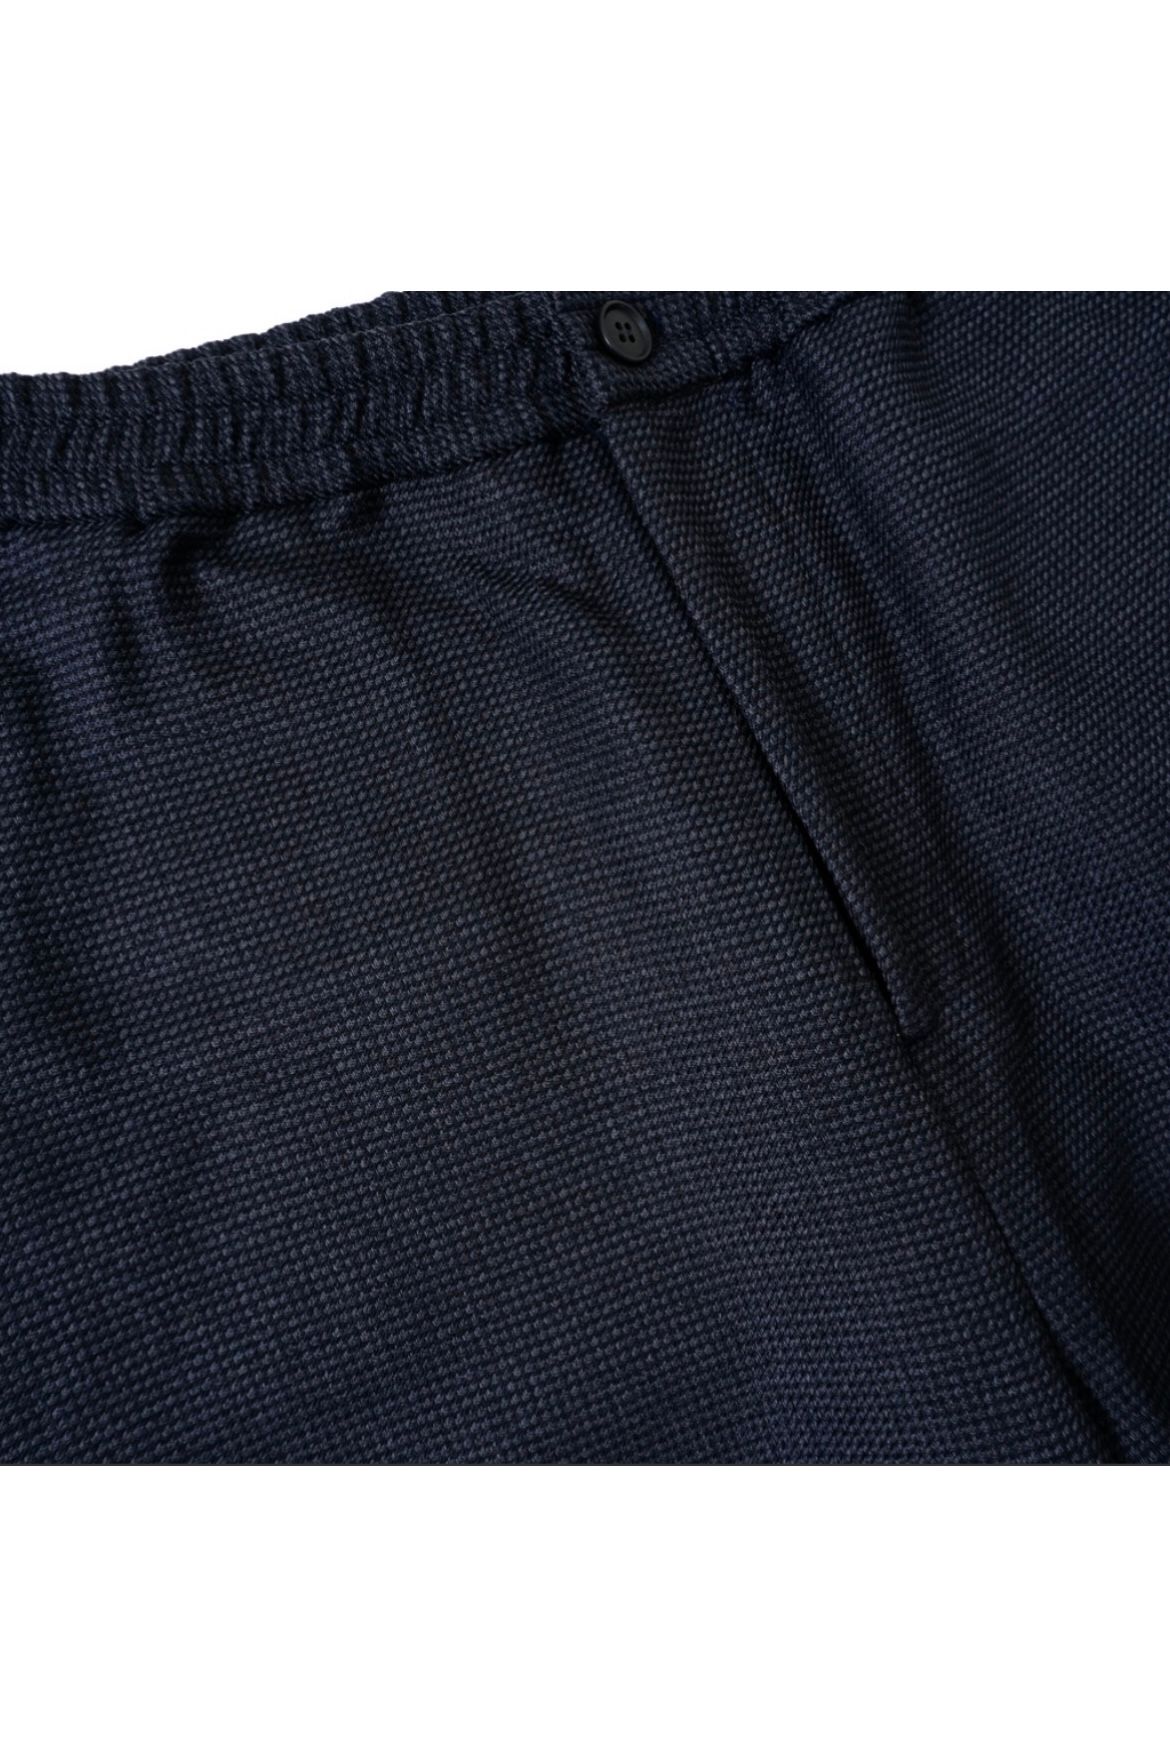 【予約商品】tweed easy pants -navy-22aw-8月下旬頃入荷予定- - 2